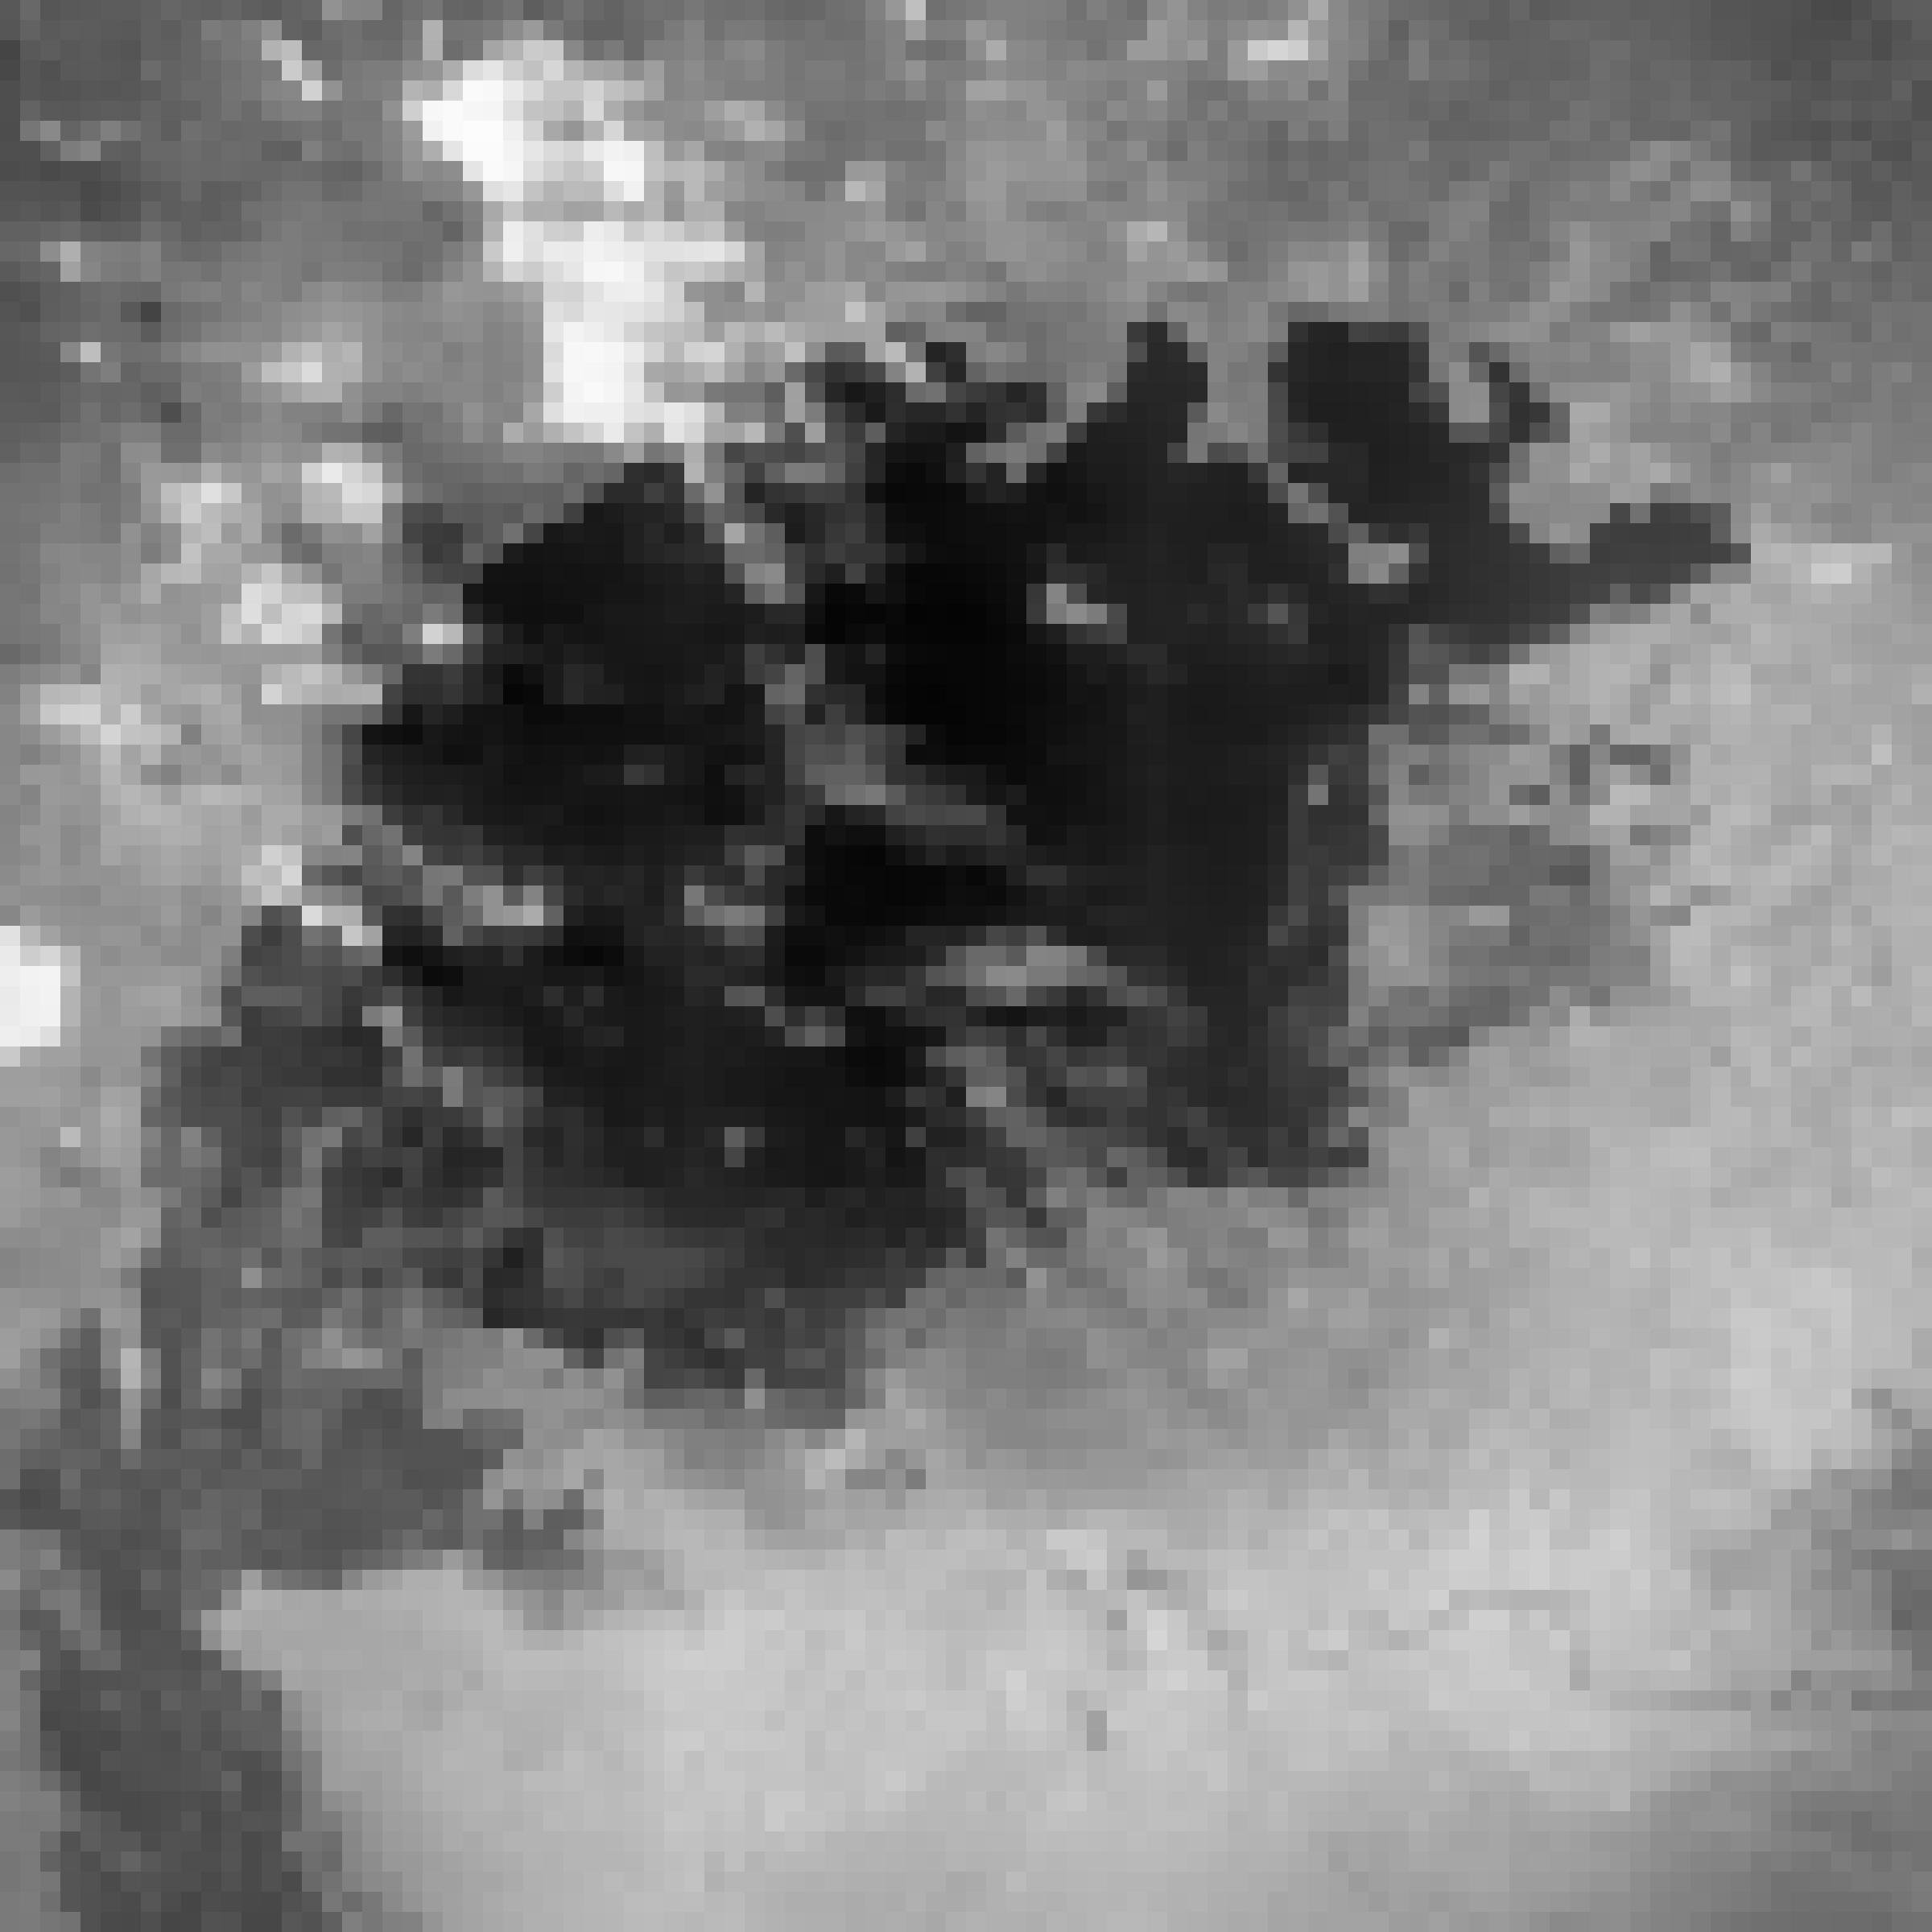 Ein schwarz-weißes Satellitenbild, die dunkle kompakte Seeoberfläche mit einigen Schleierwolken darüber.